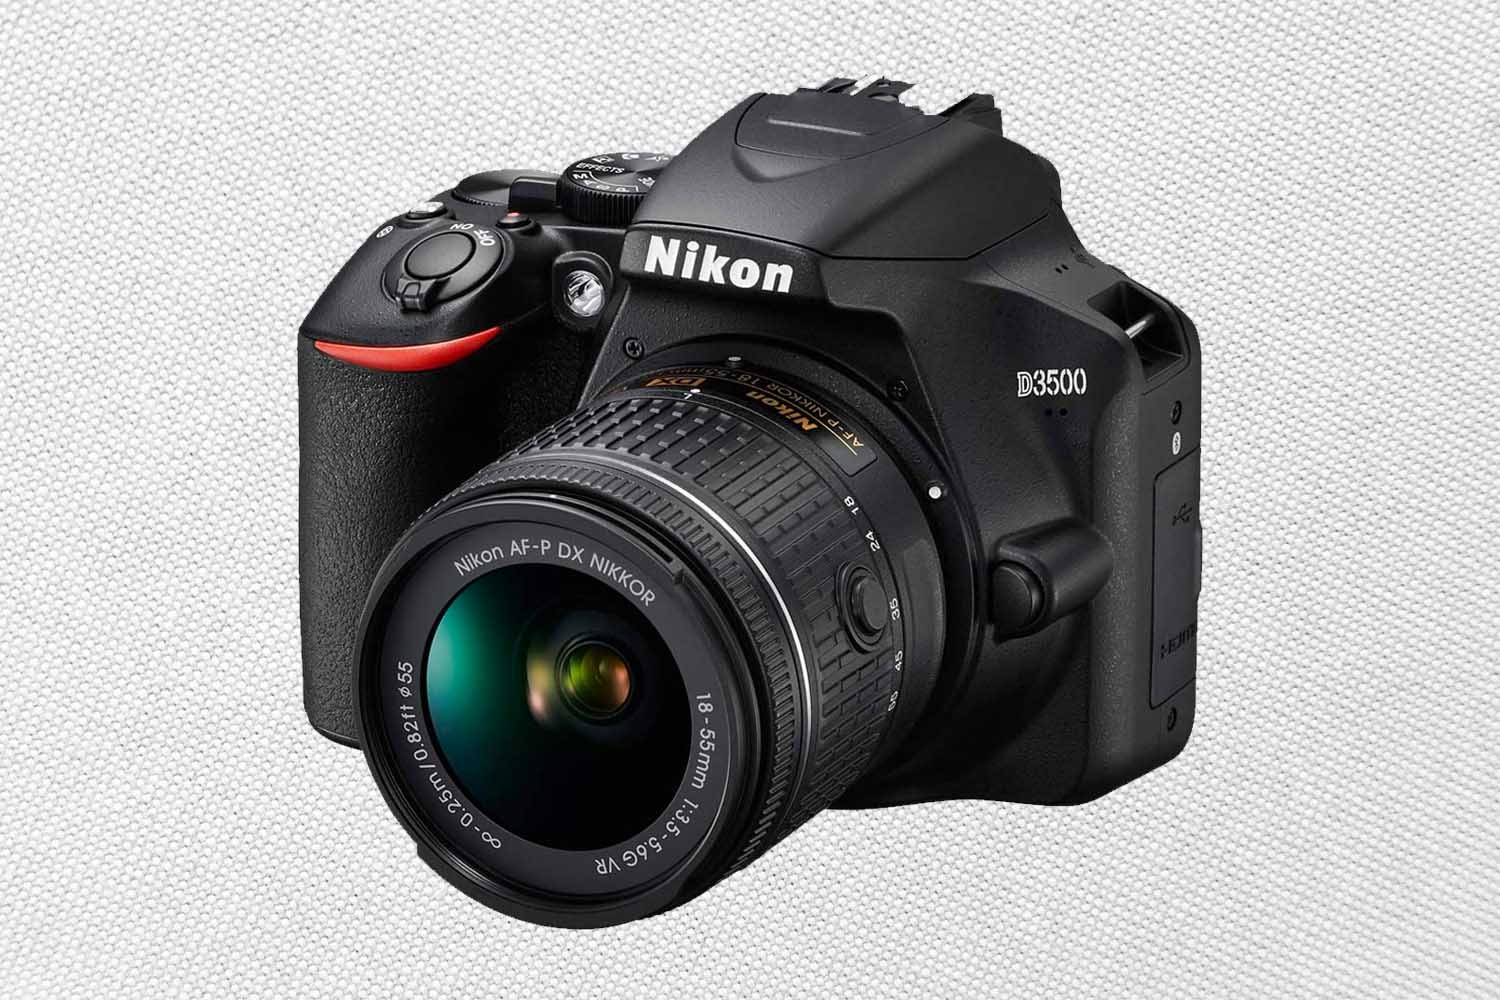 Nikon D3500 24.2MP DSLR Camera